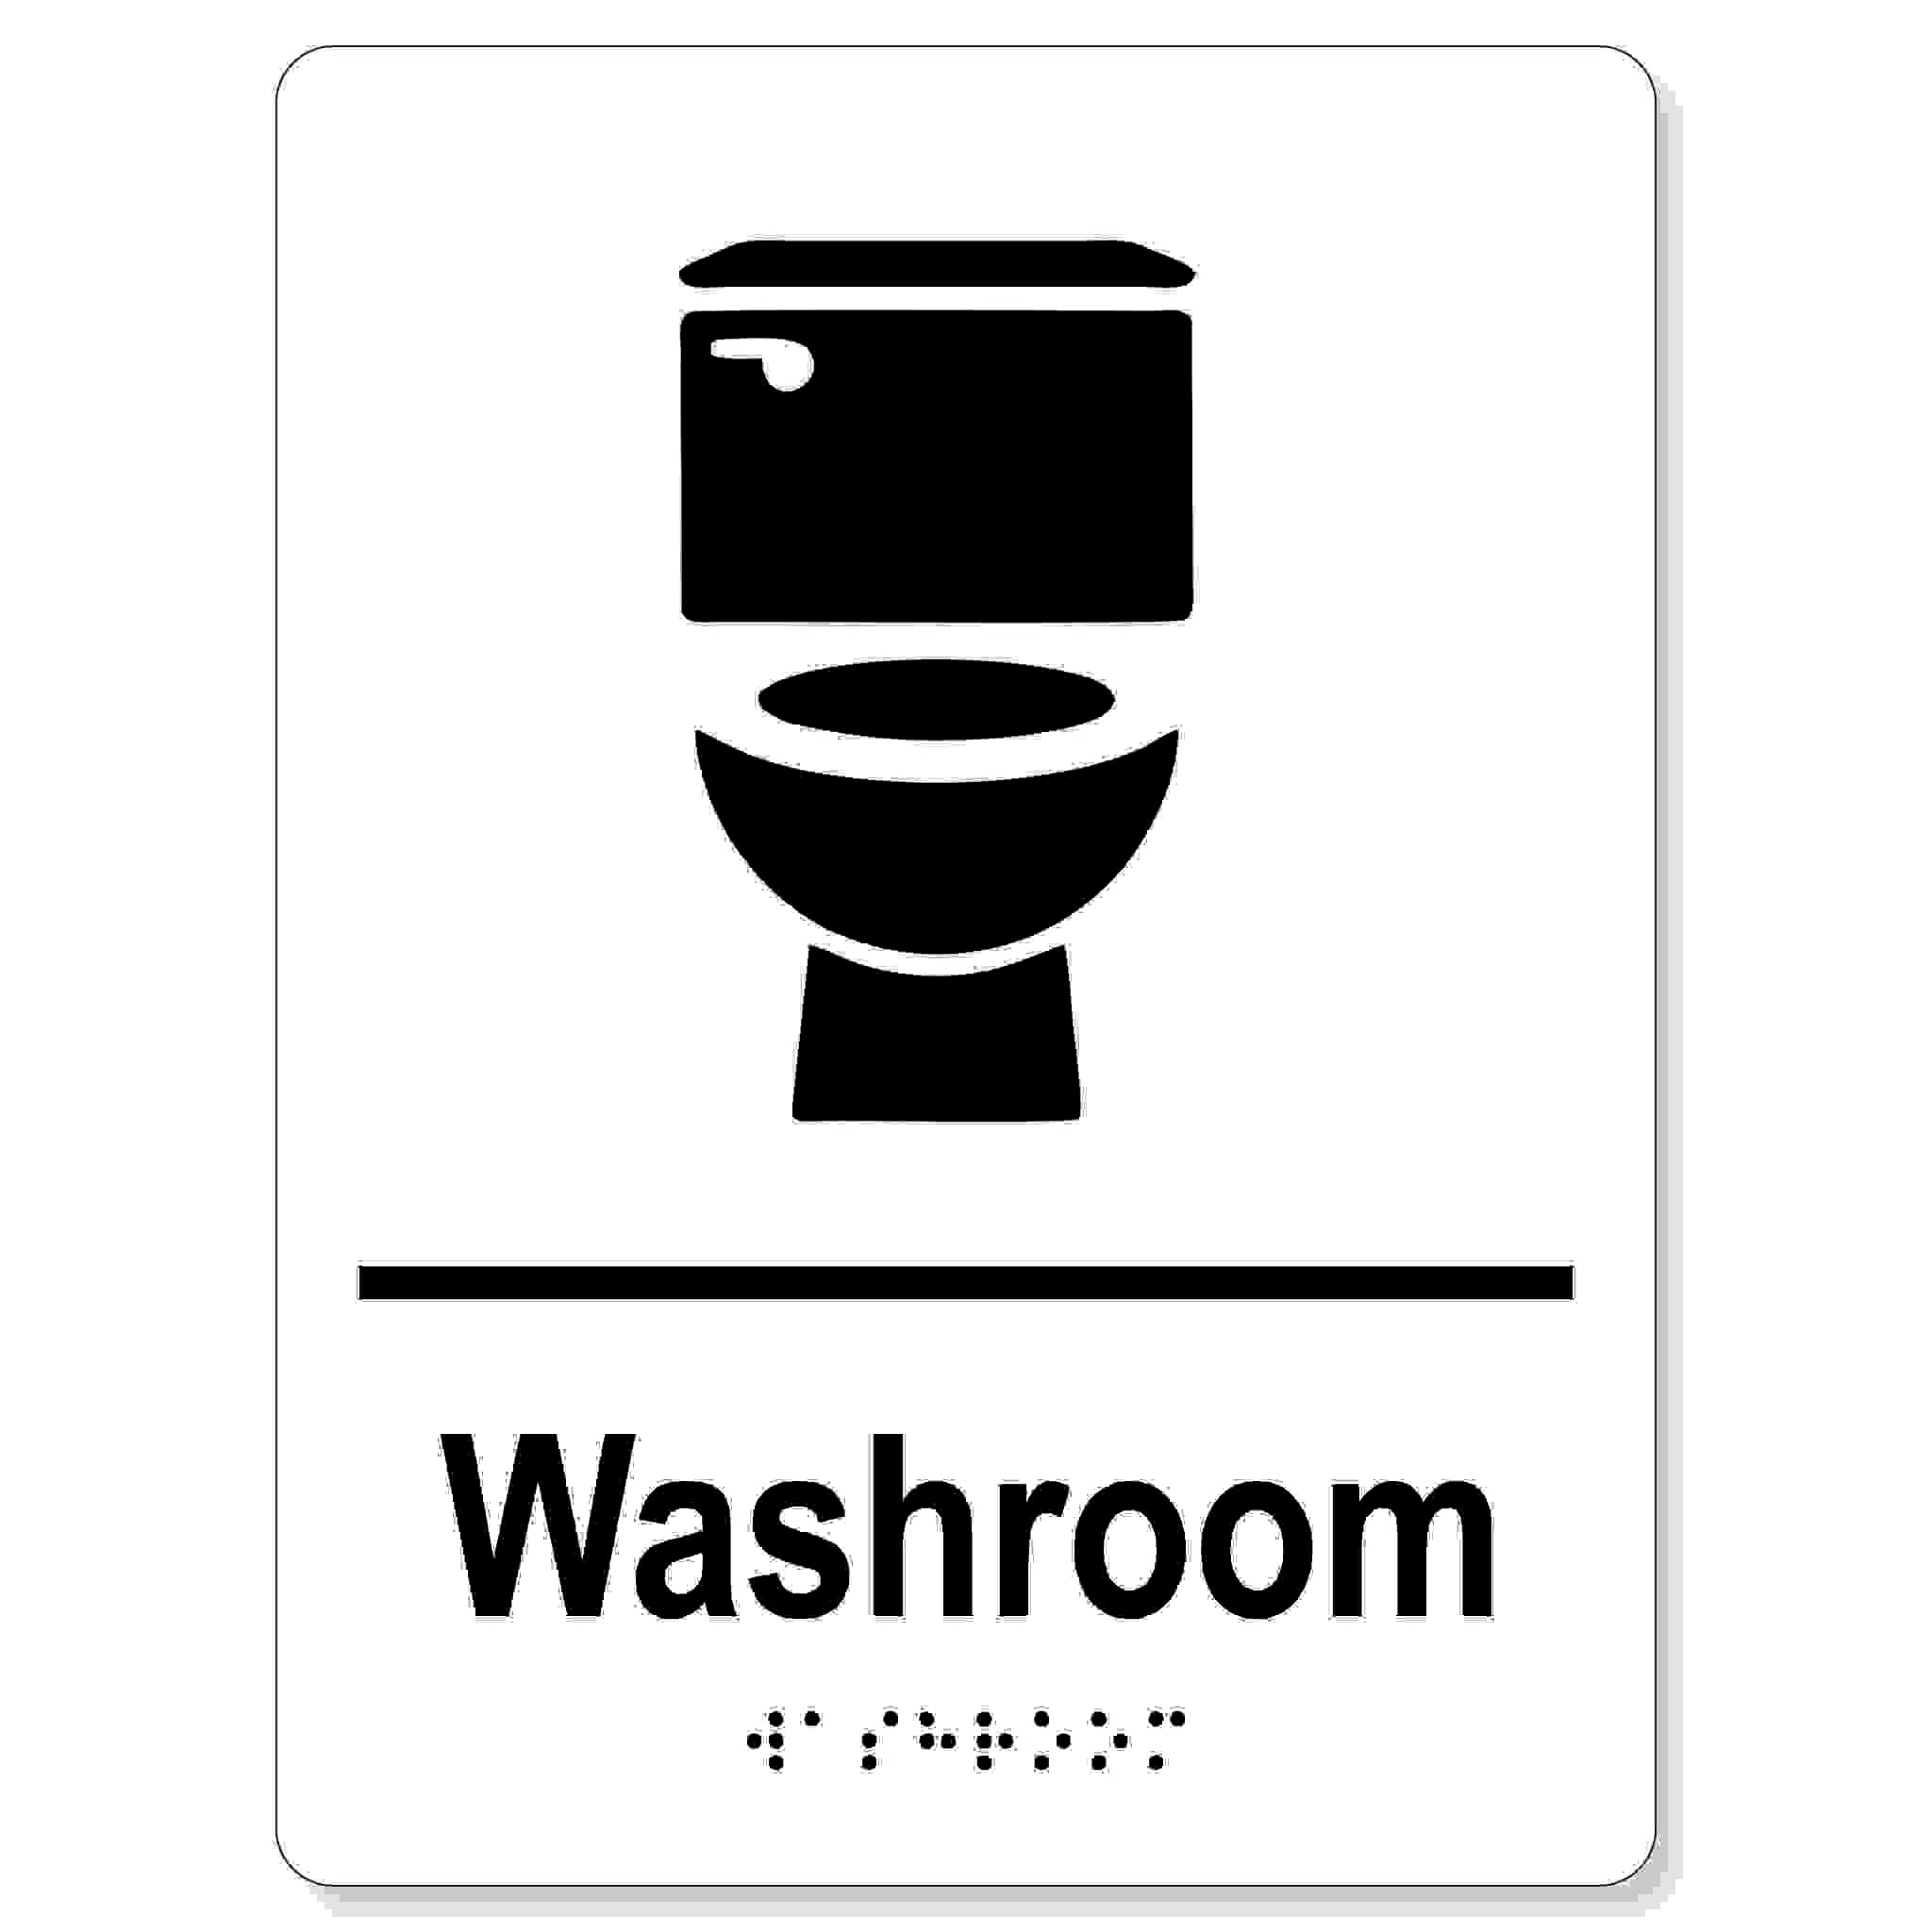 All Gender washroom sign